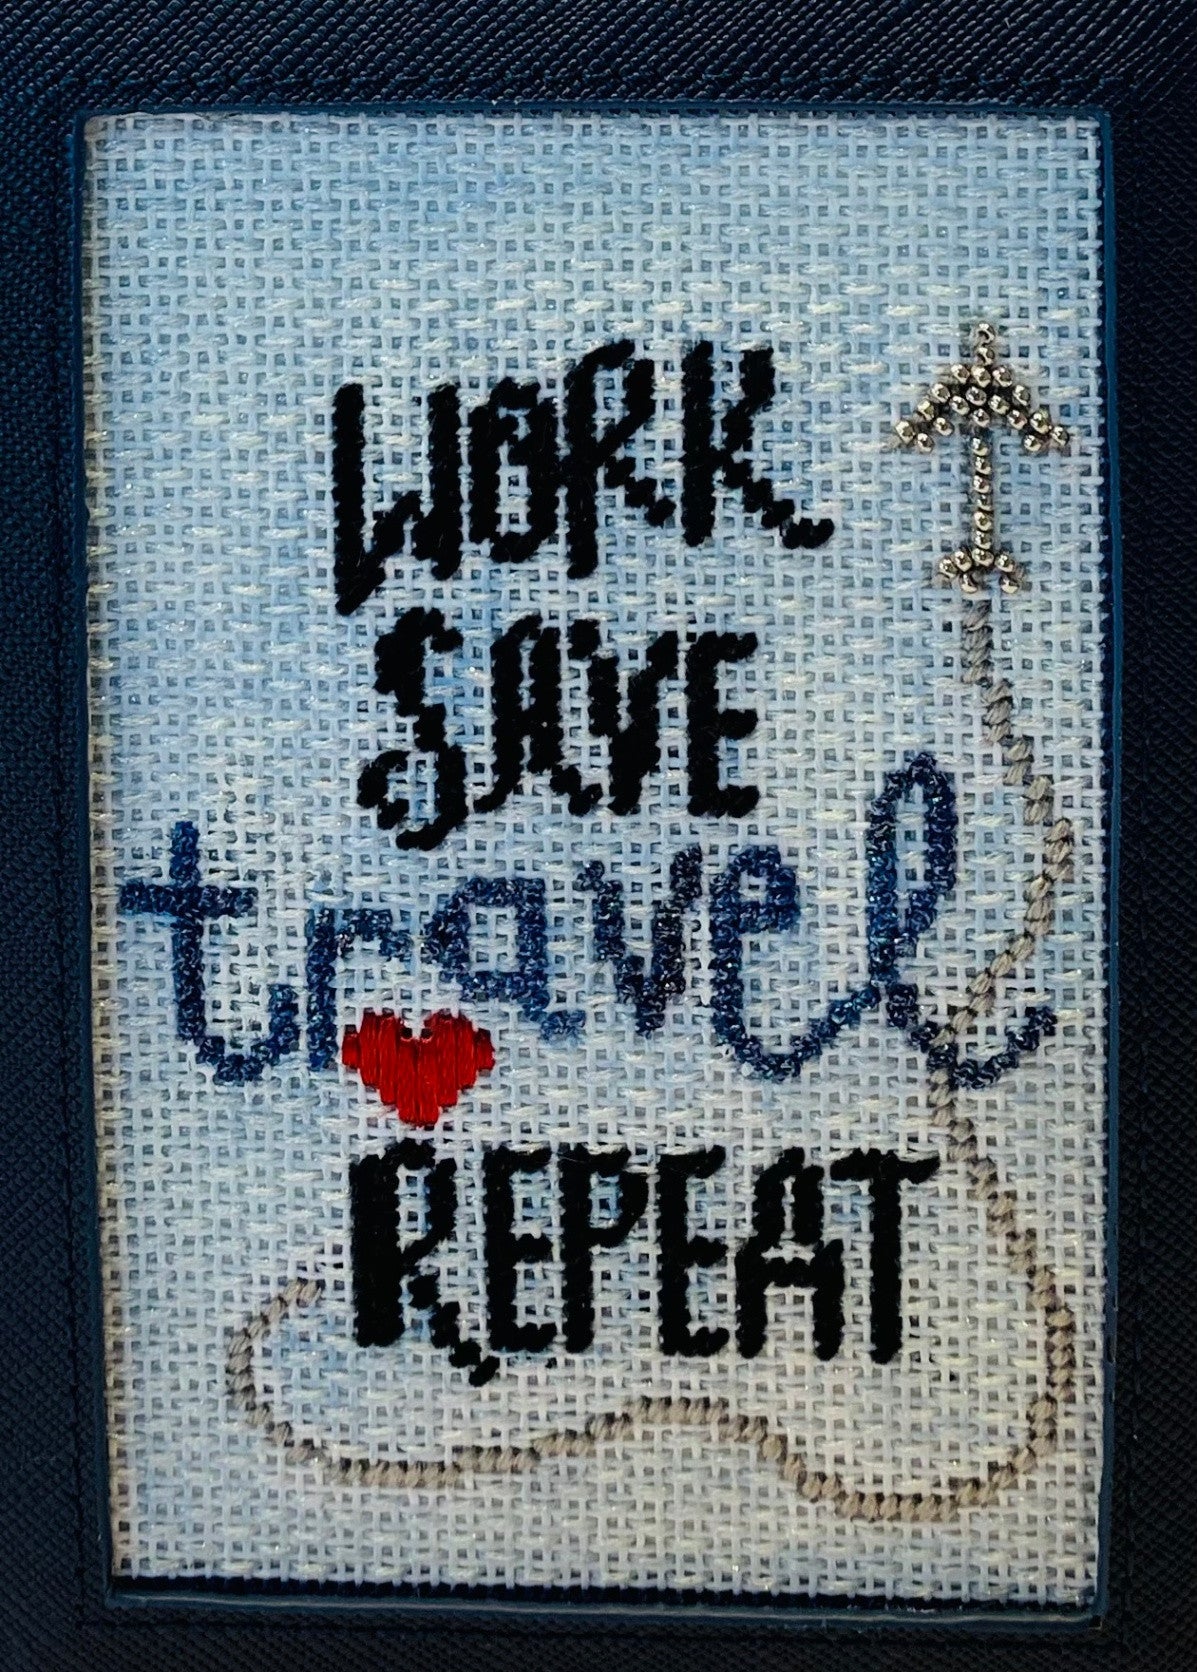 Sew Much Fun! Work, Travel Repeat Passport Insert